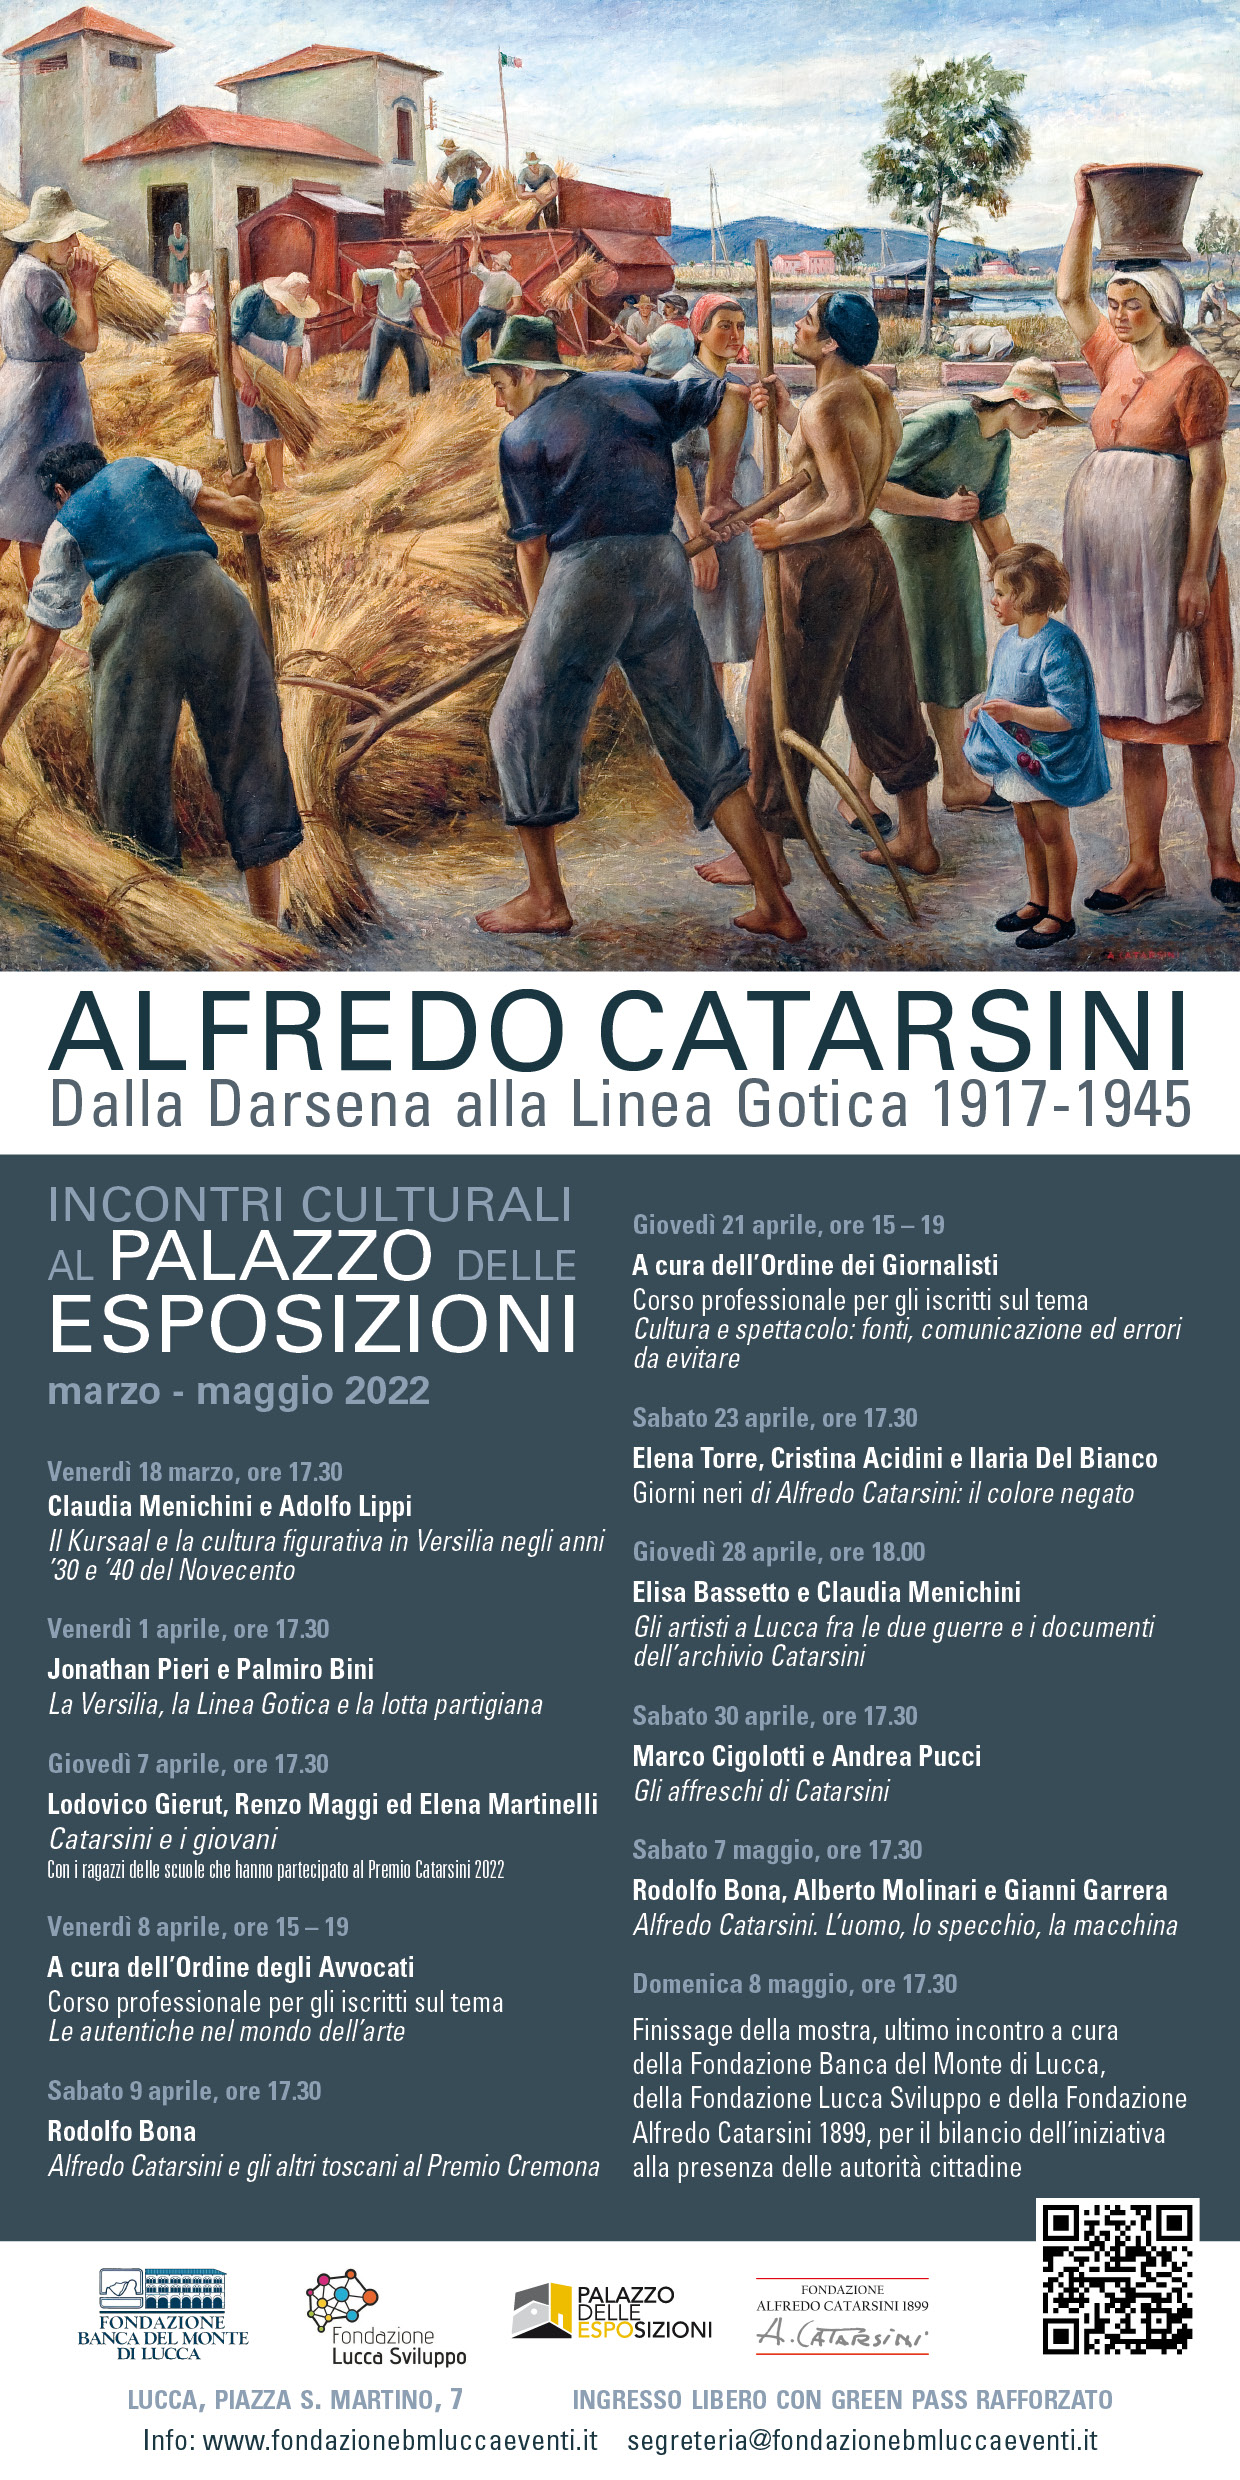 Mostra di Catarsini a Lucca: gli artisti tra le 2 guerre e l’archivio. Se ne parlerà giovedì 28